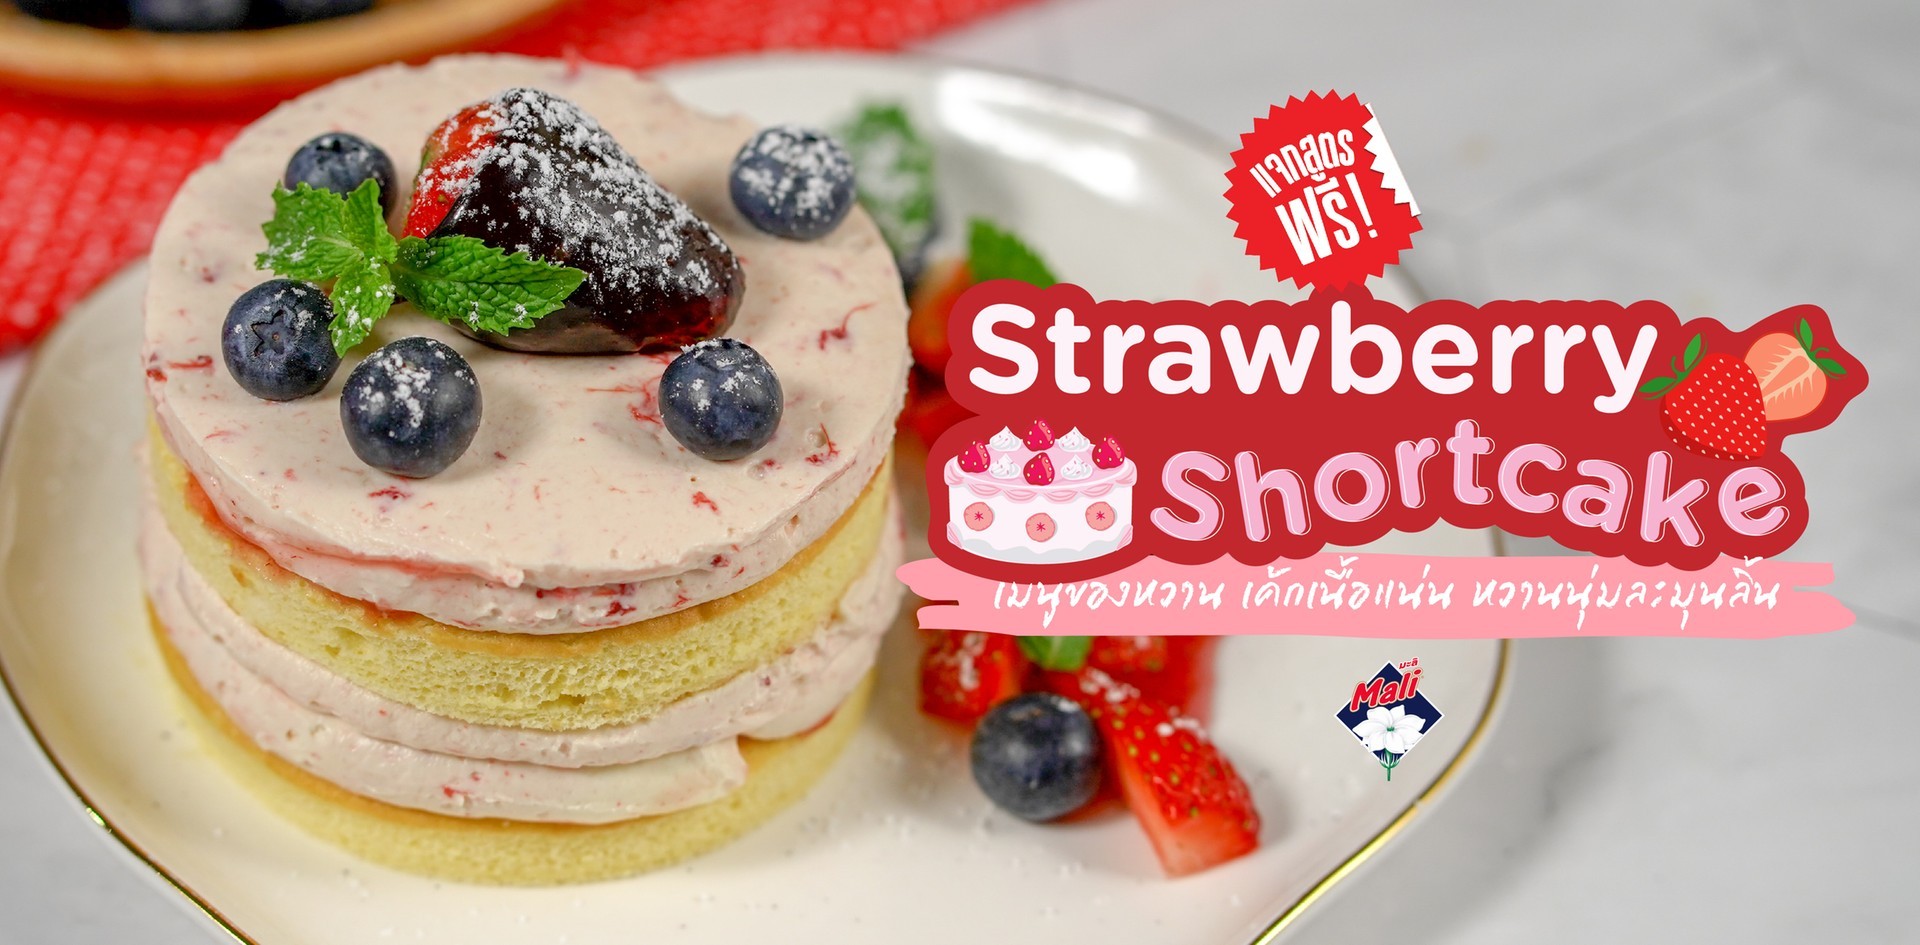 วิธีทำ “Strawberry Shortcake” เมนูของหวาน เนื้อแน่น หวานนุ่มละมุนลิ้น เมนูอาหารว่าง